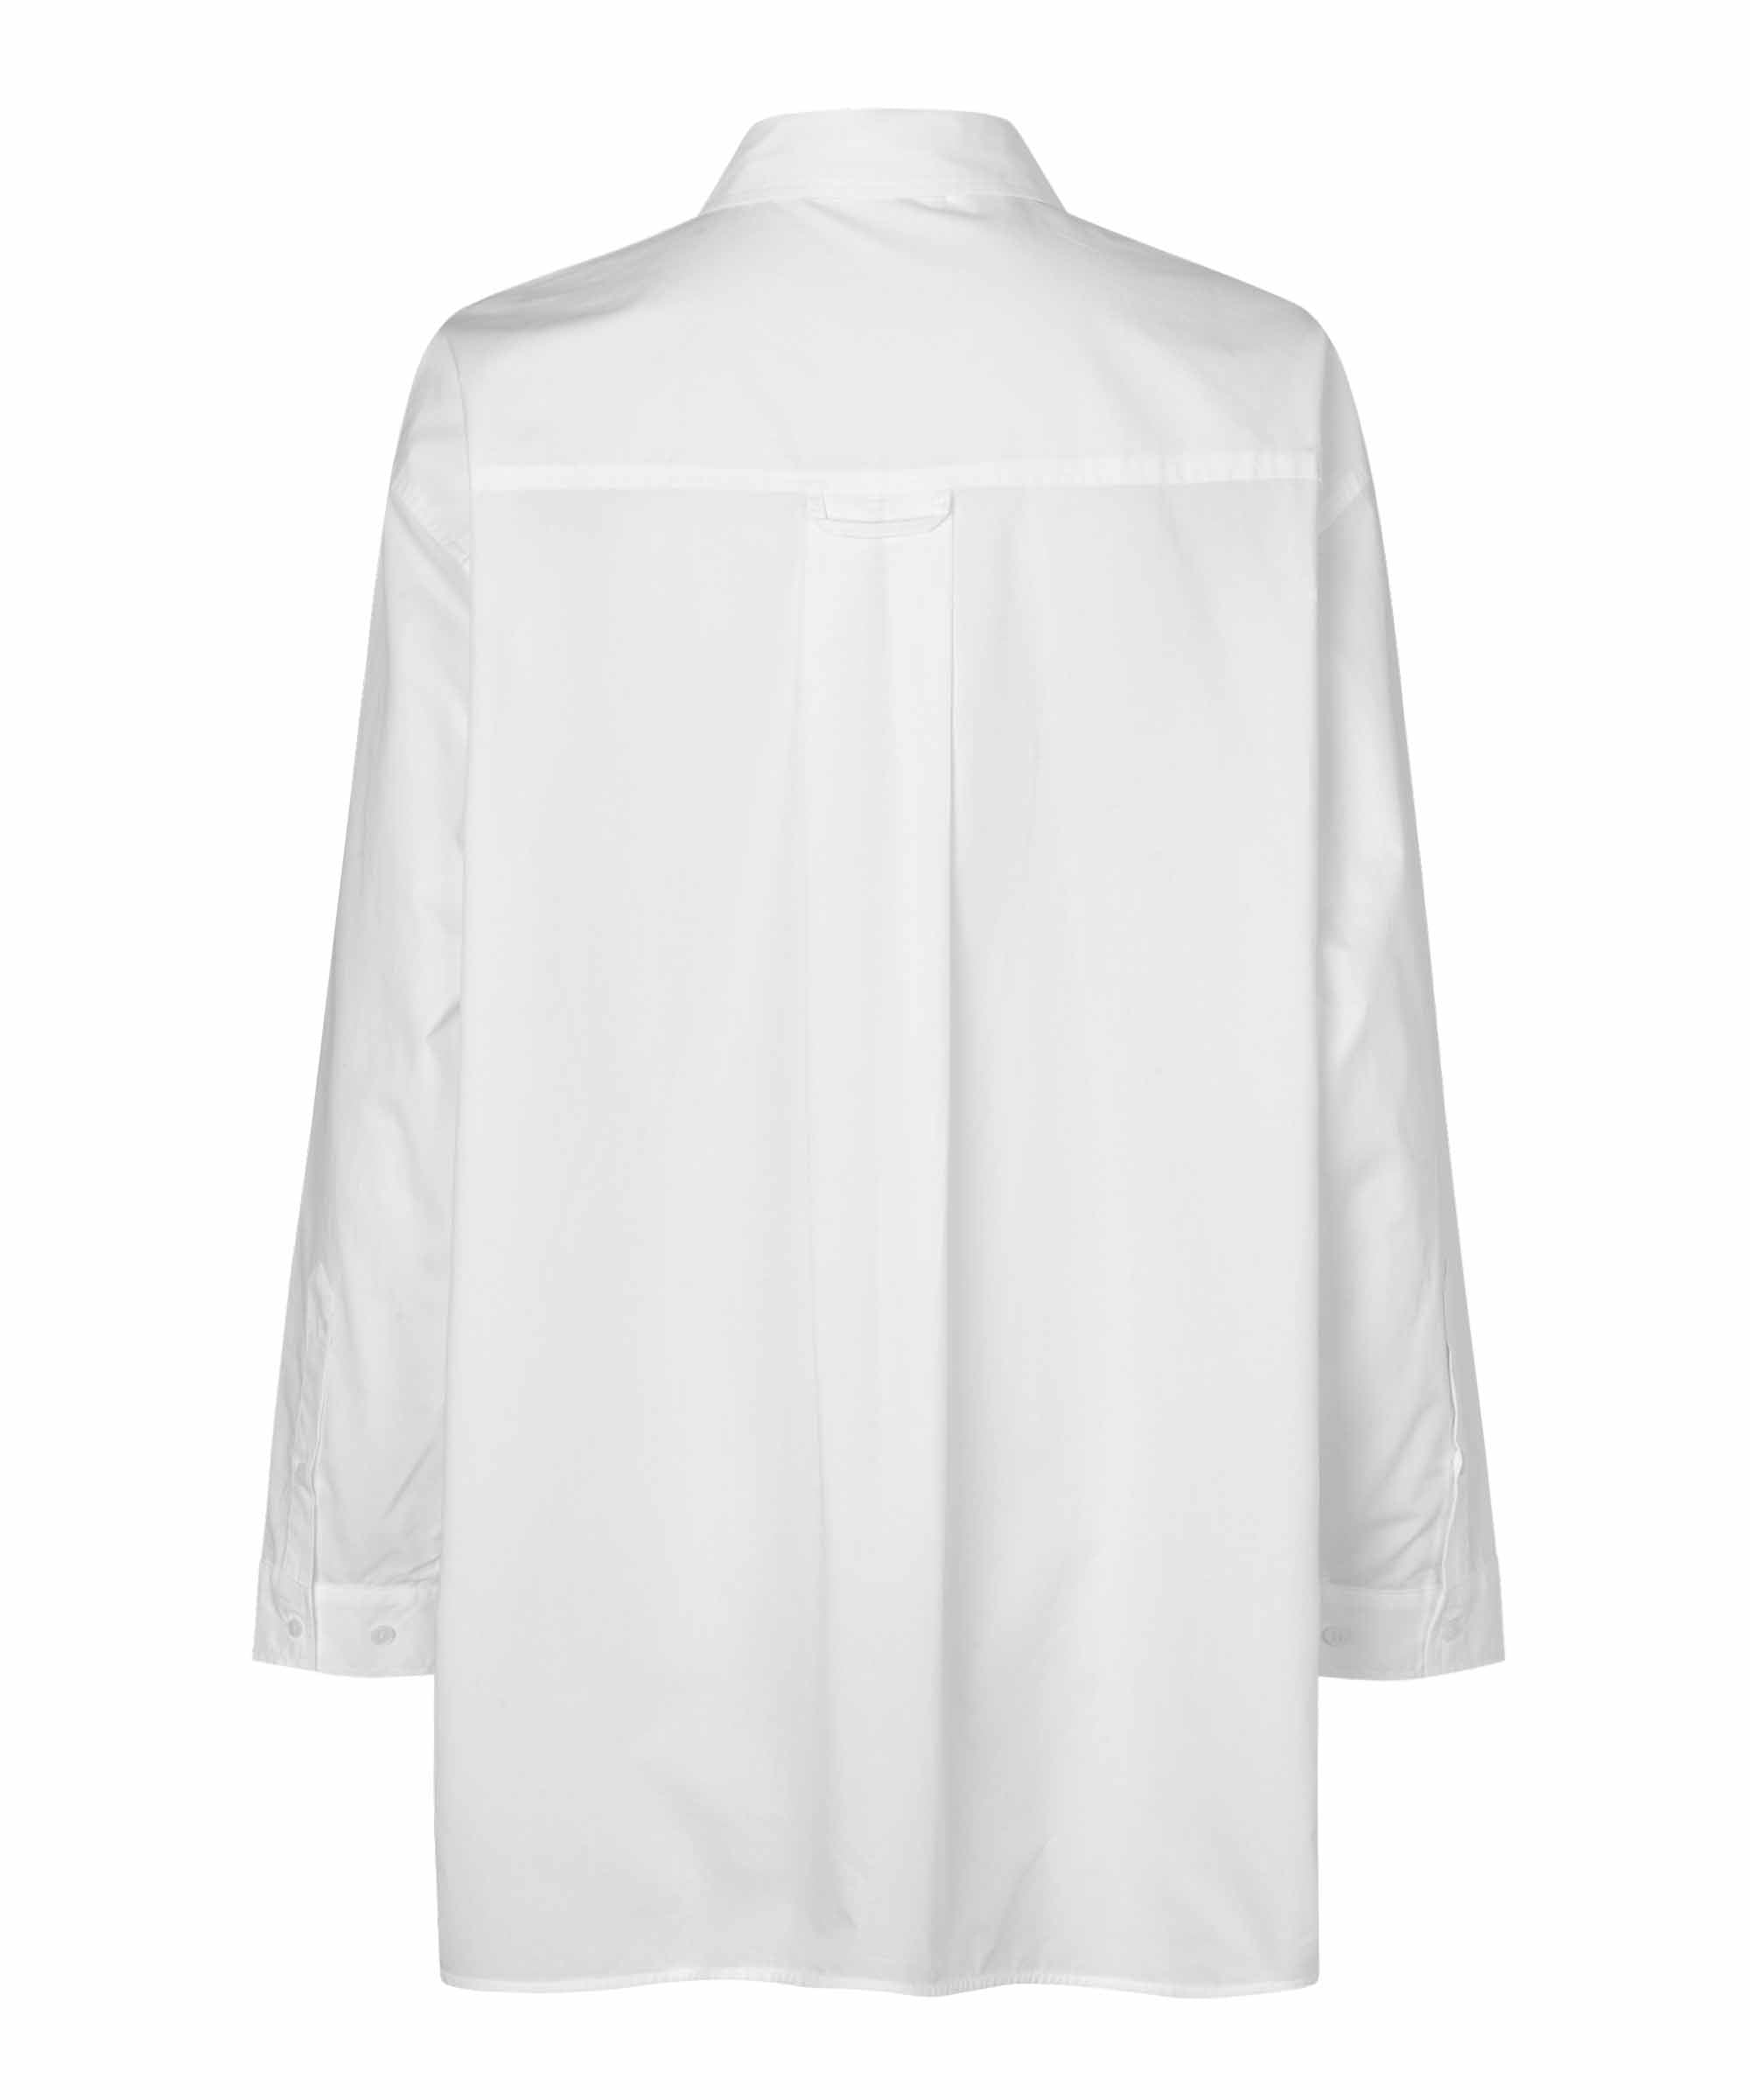 1007819 MaIdette Shirt - White